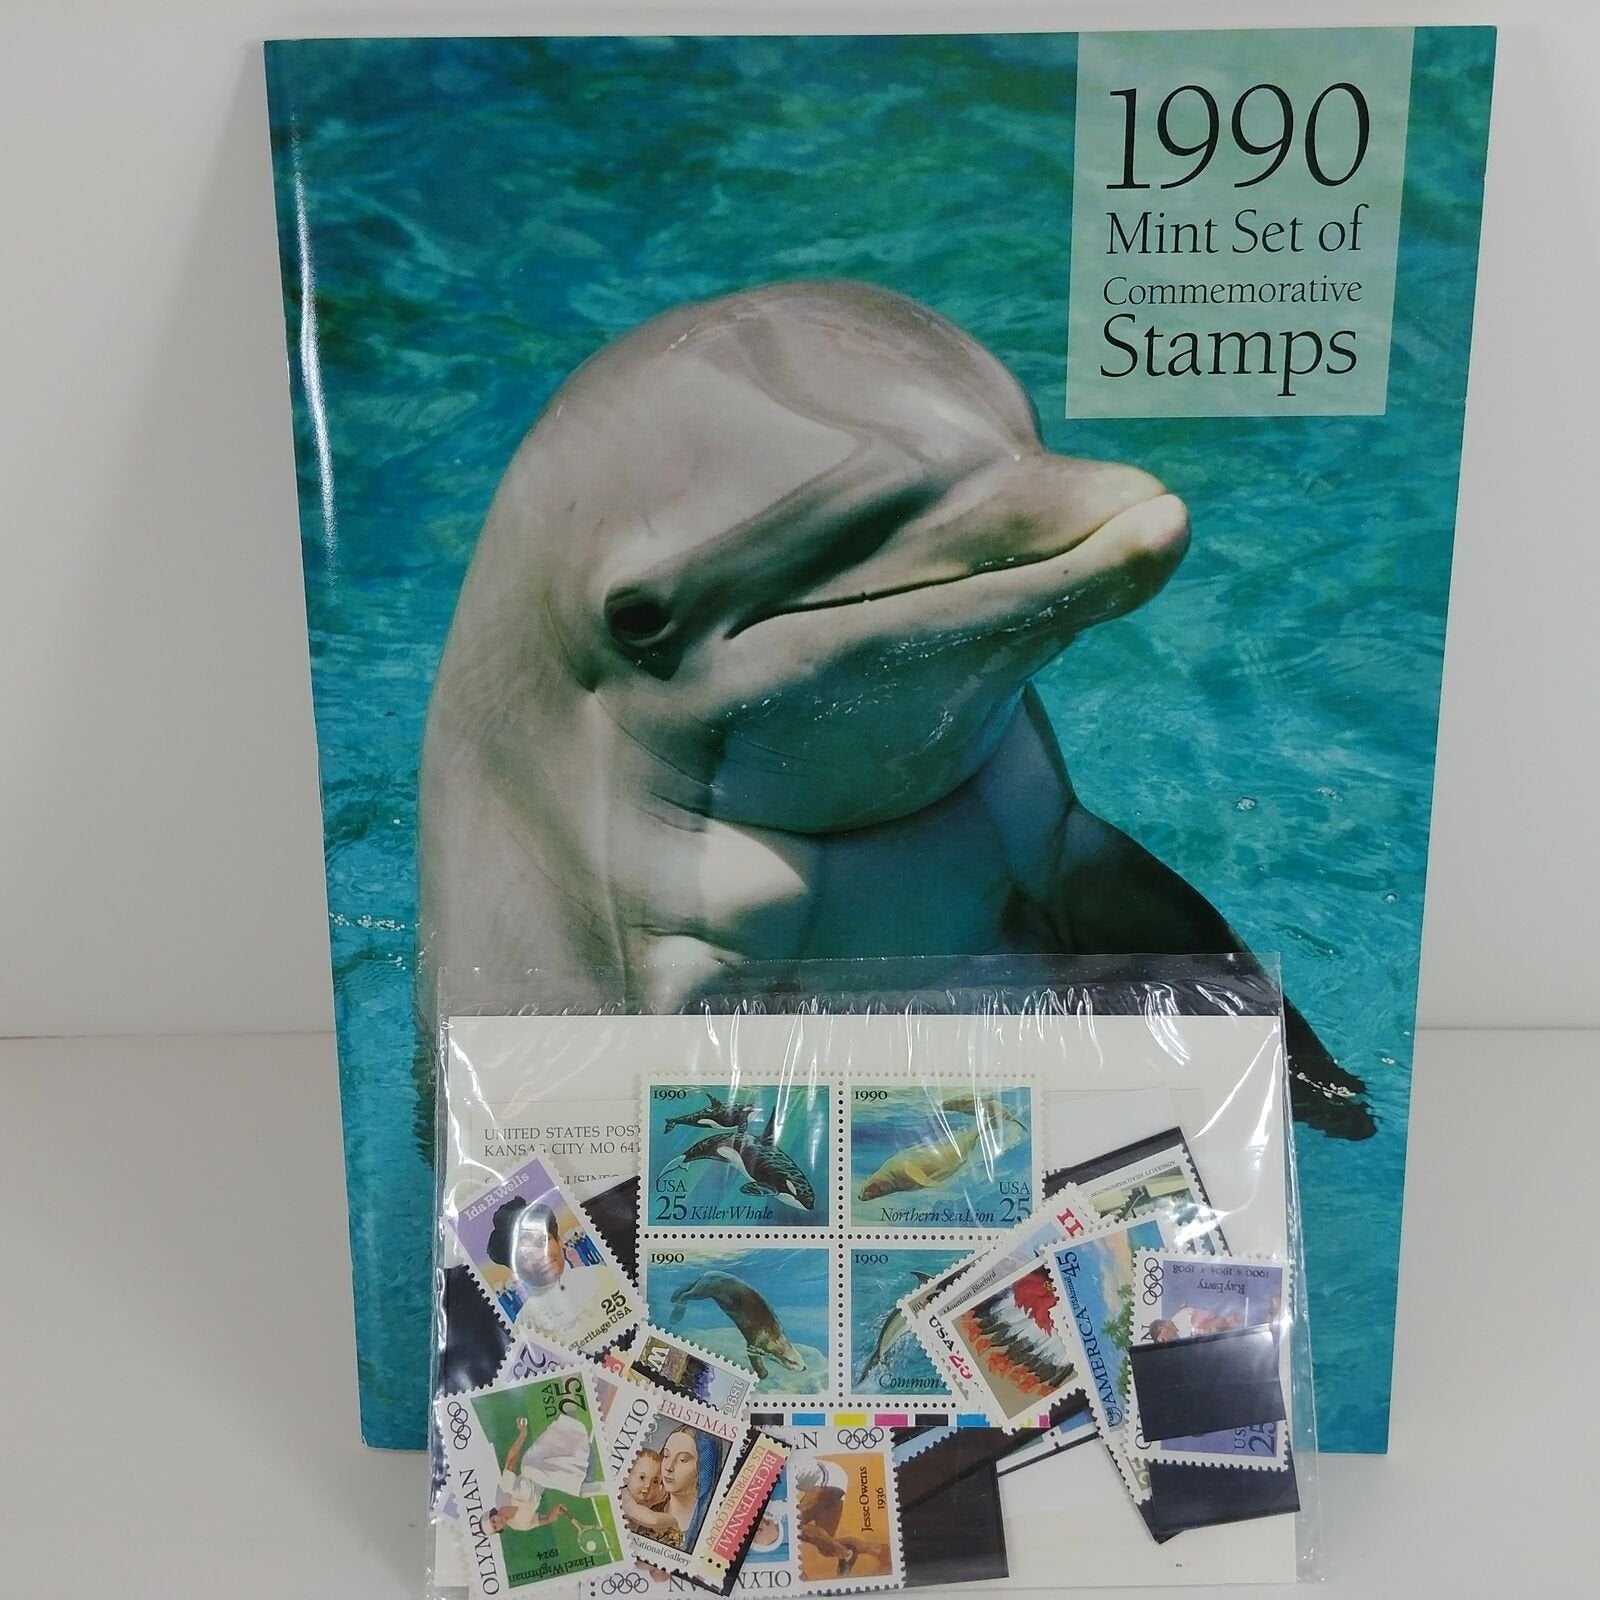 1990 US Commemorative MINT Stamps Sealed and Souvenir Album